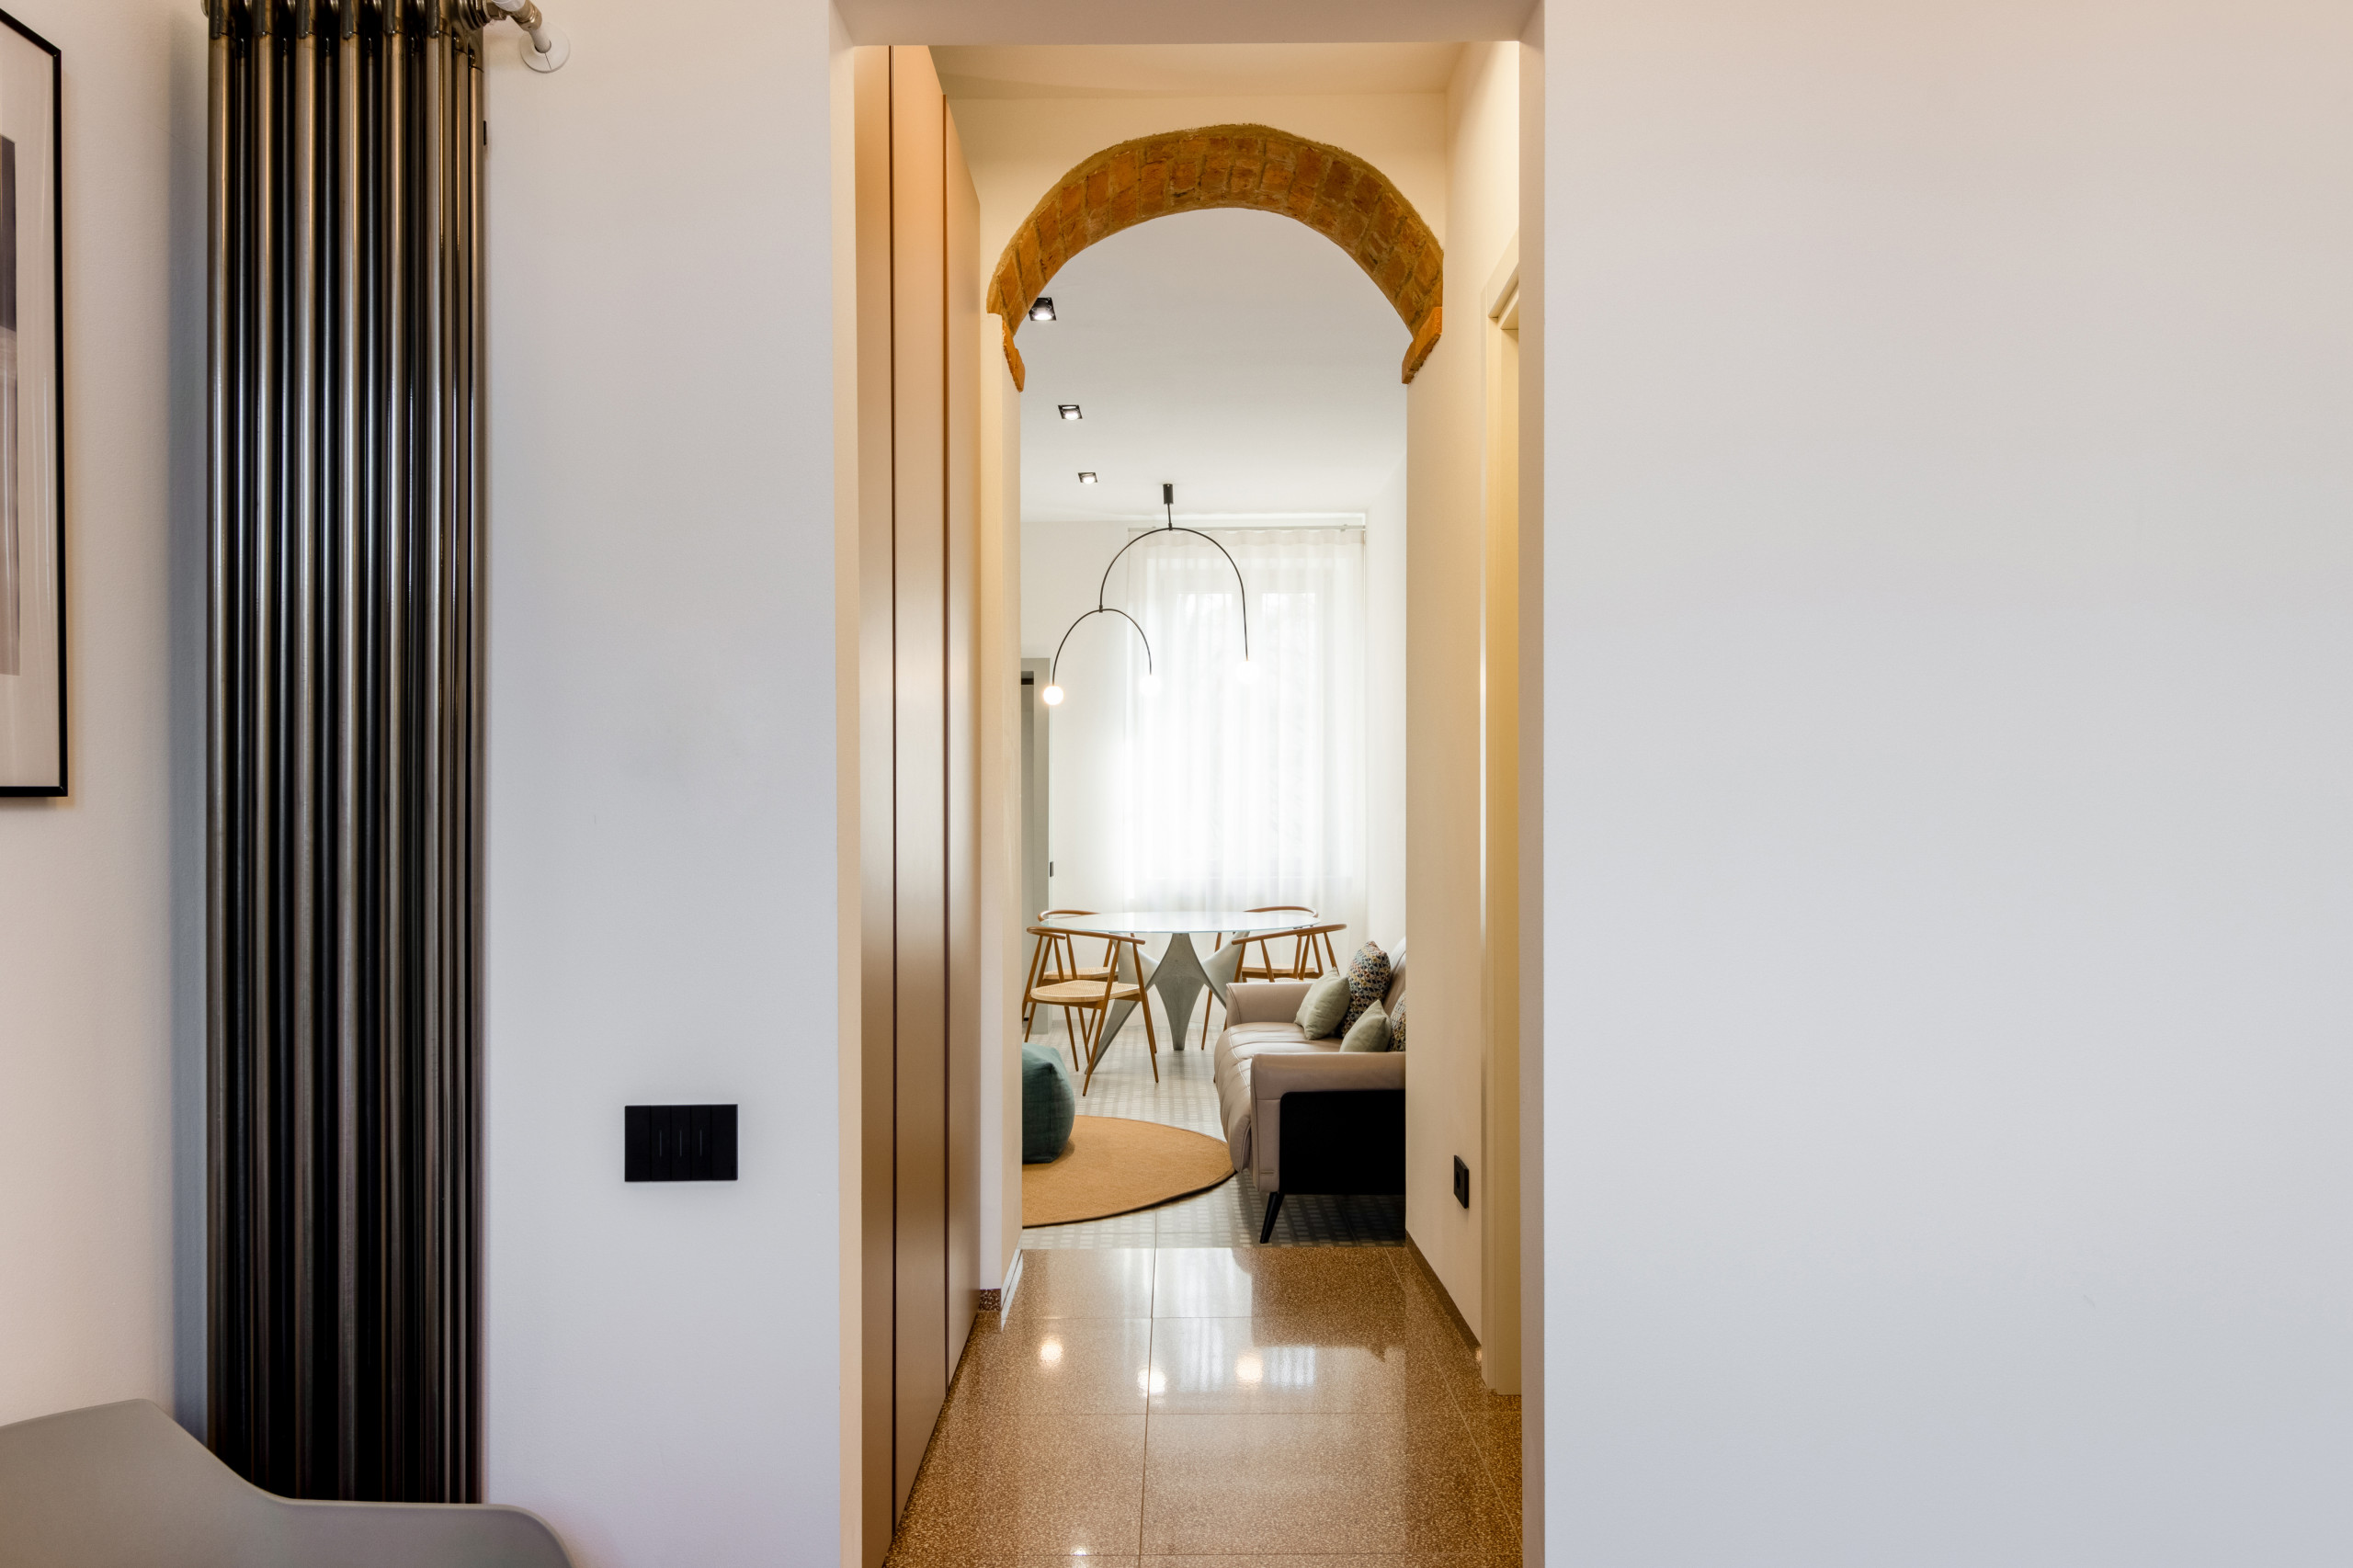 Casa Brava | Ristrutturazione completa appartamento 80mq